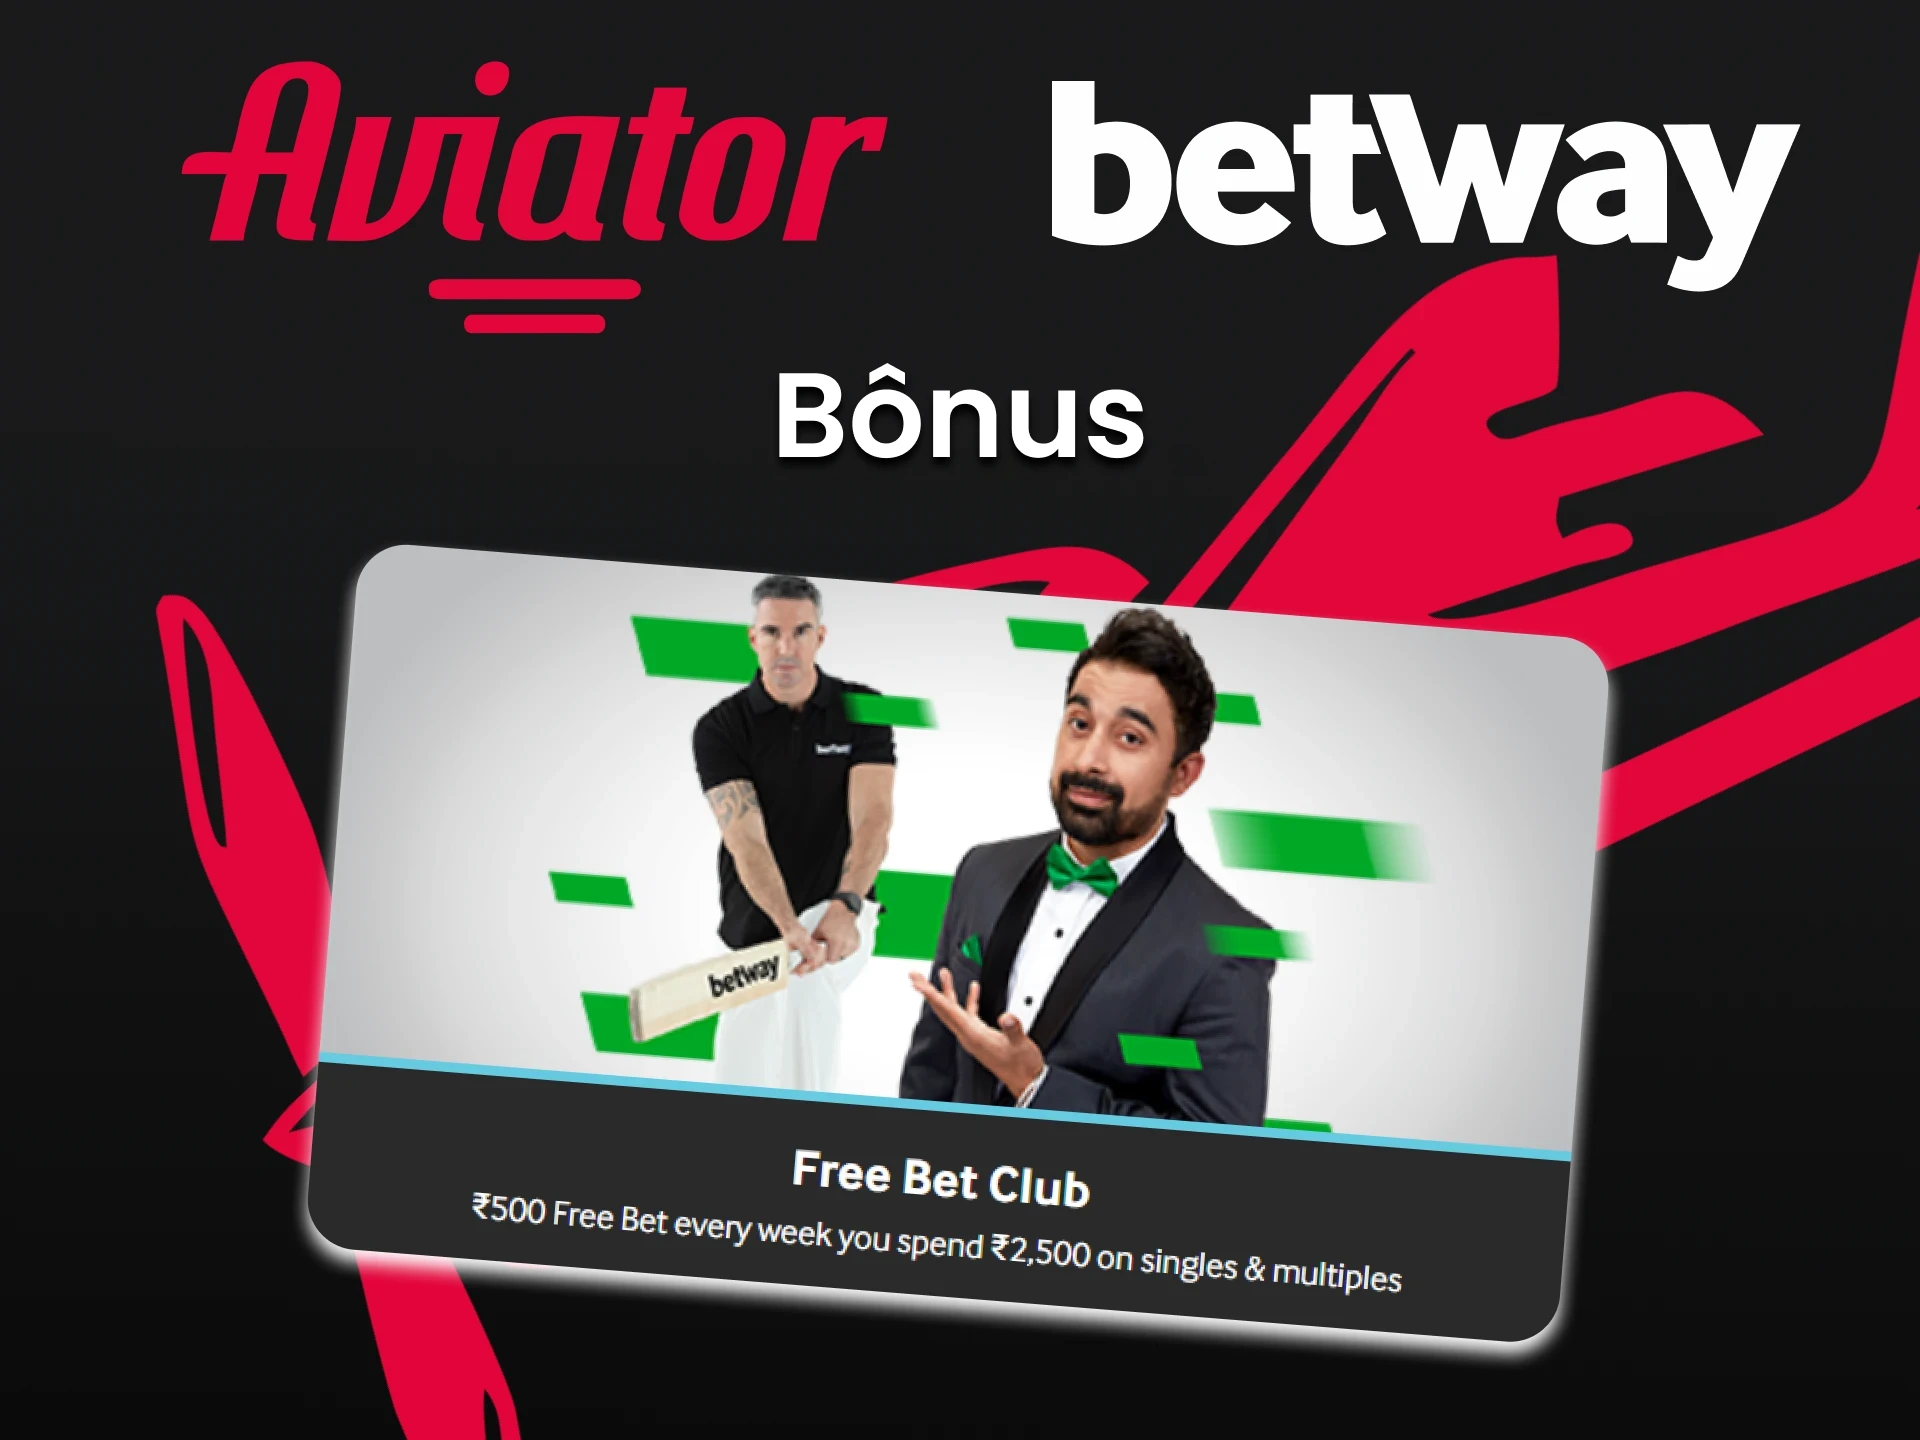 Para jogar no Aviator, você receberá um bônus da Betway.